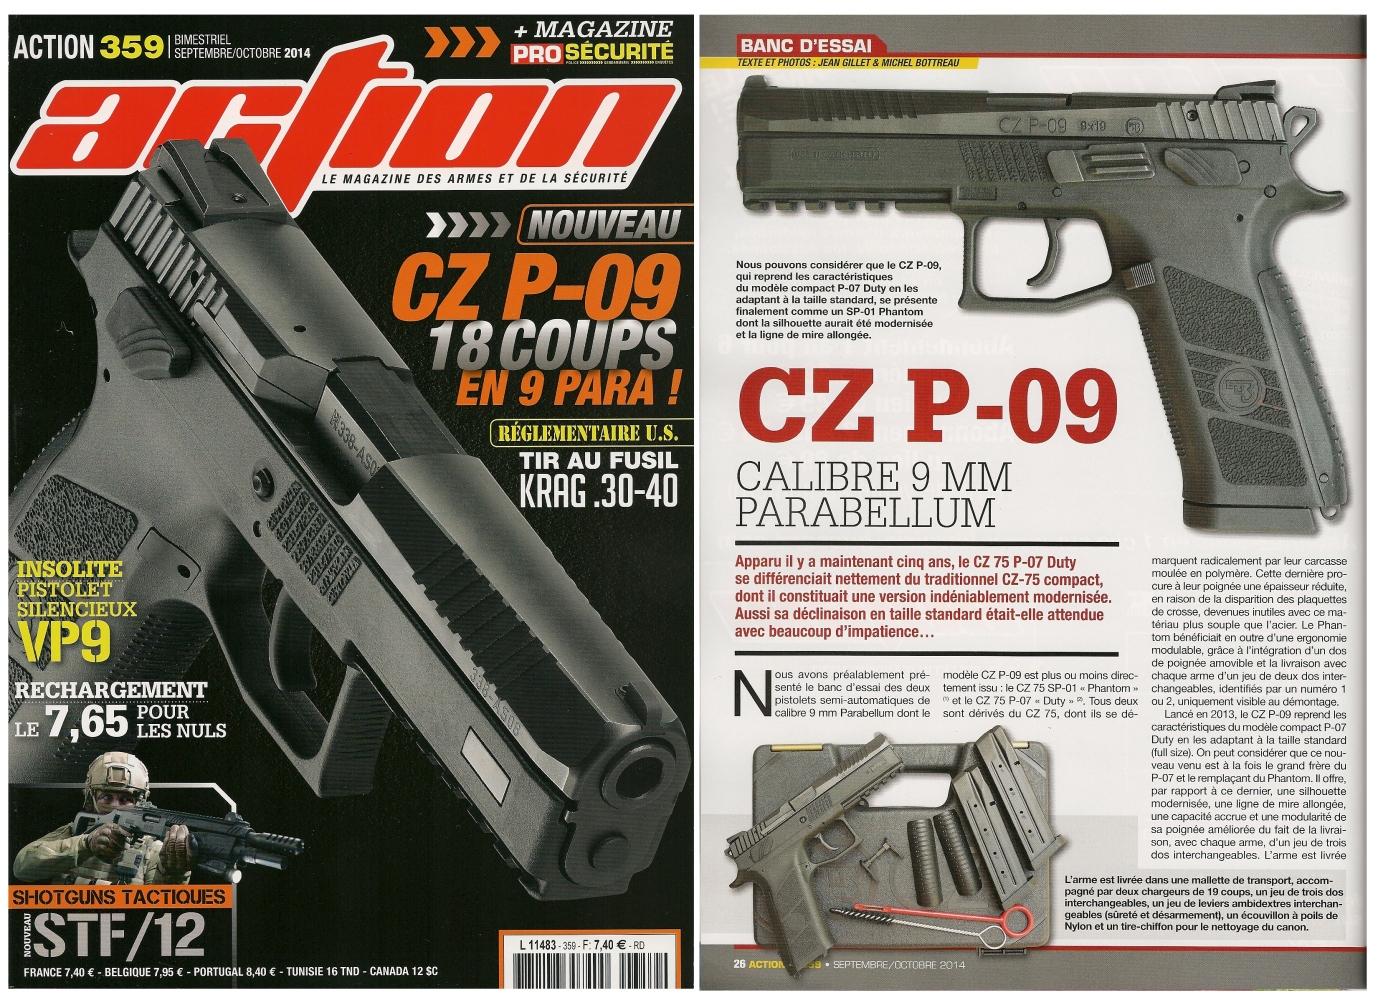 Le banc d'essai du pistolet CZ P-09 a été publié sur 6 pages dans le magazine Action n° 359 (septembre-octobre 2014)